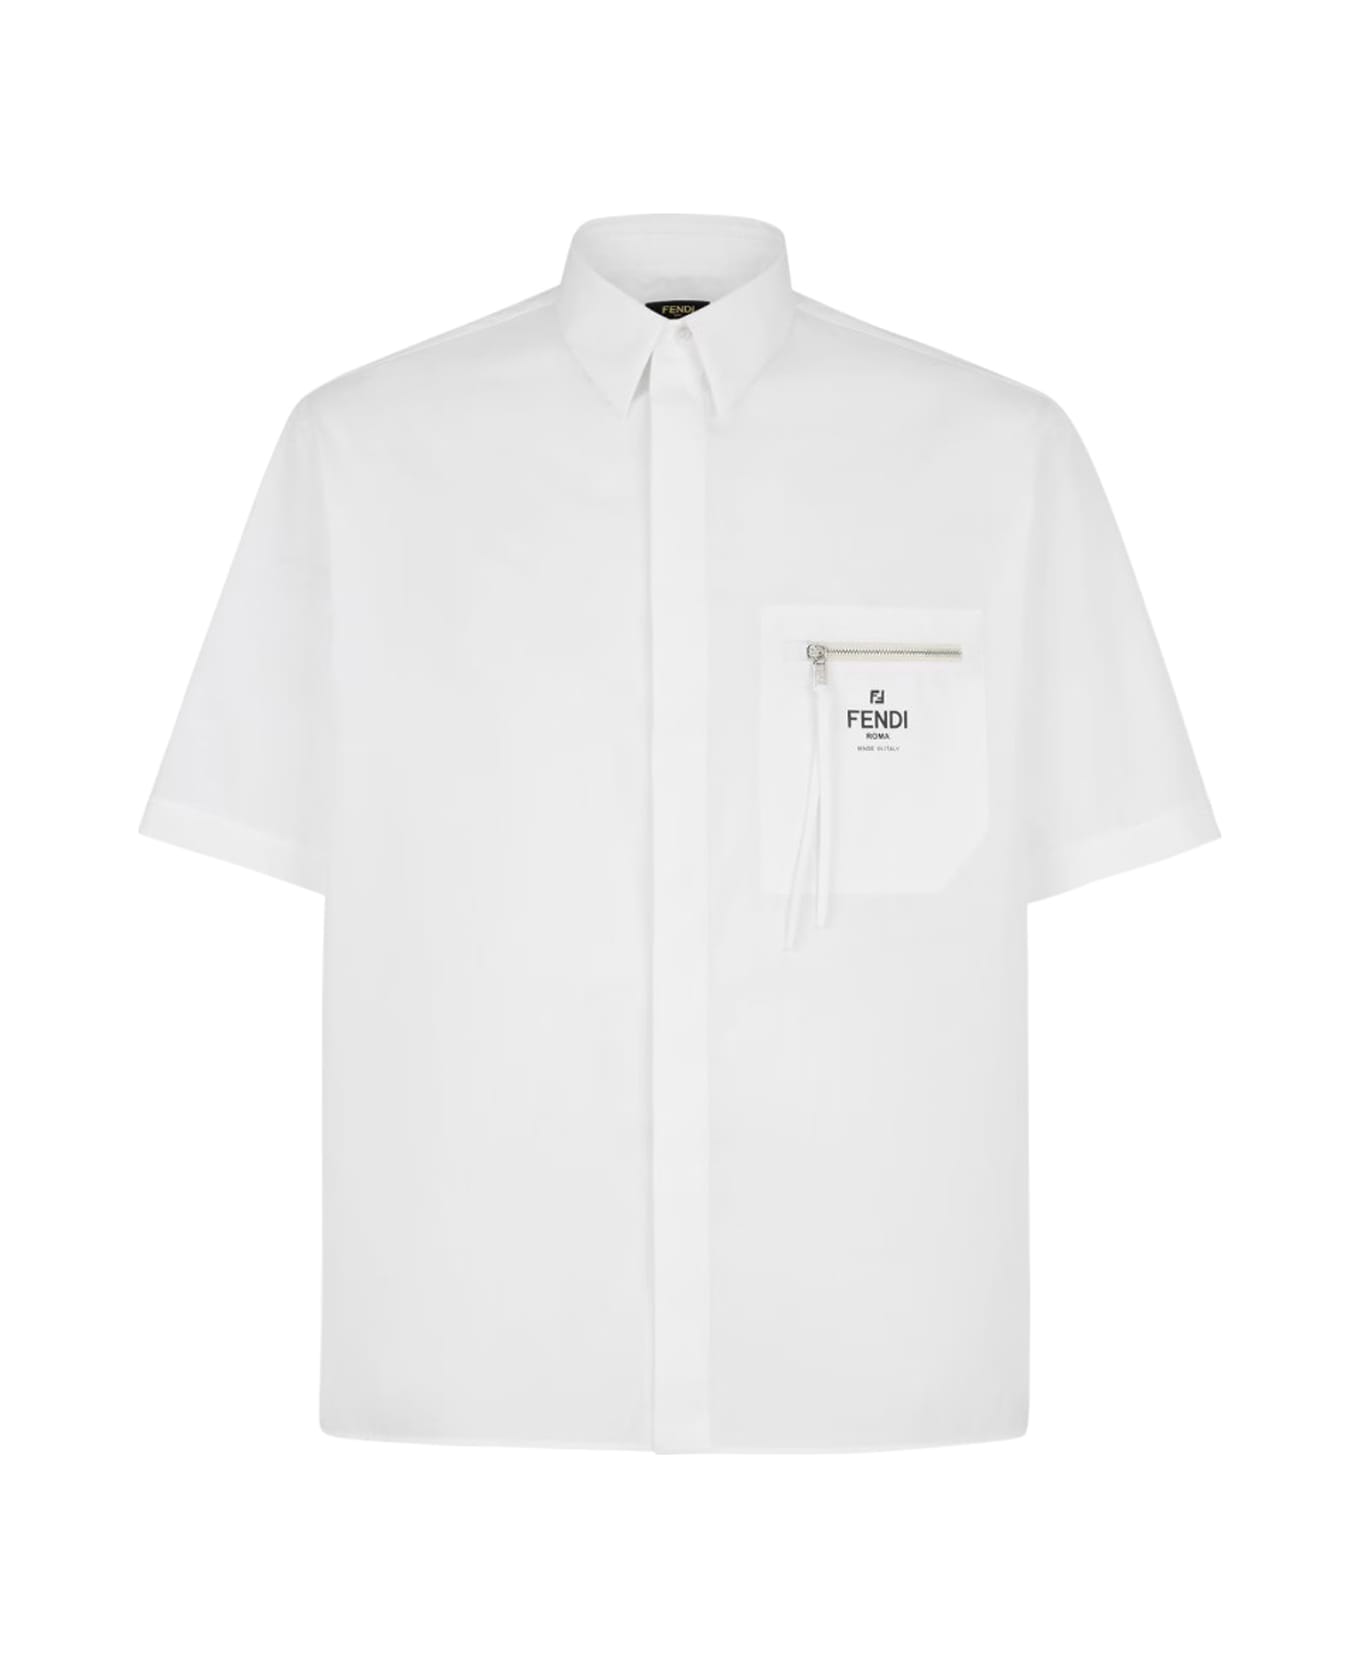 Fendi Shirt Co Roma Pocket - White シャツ